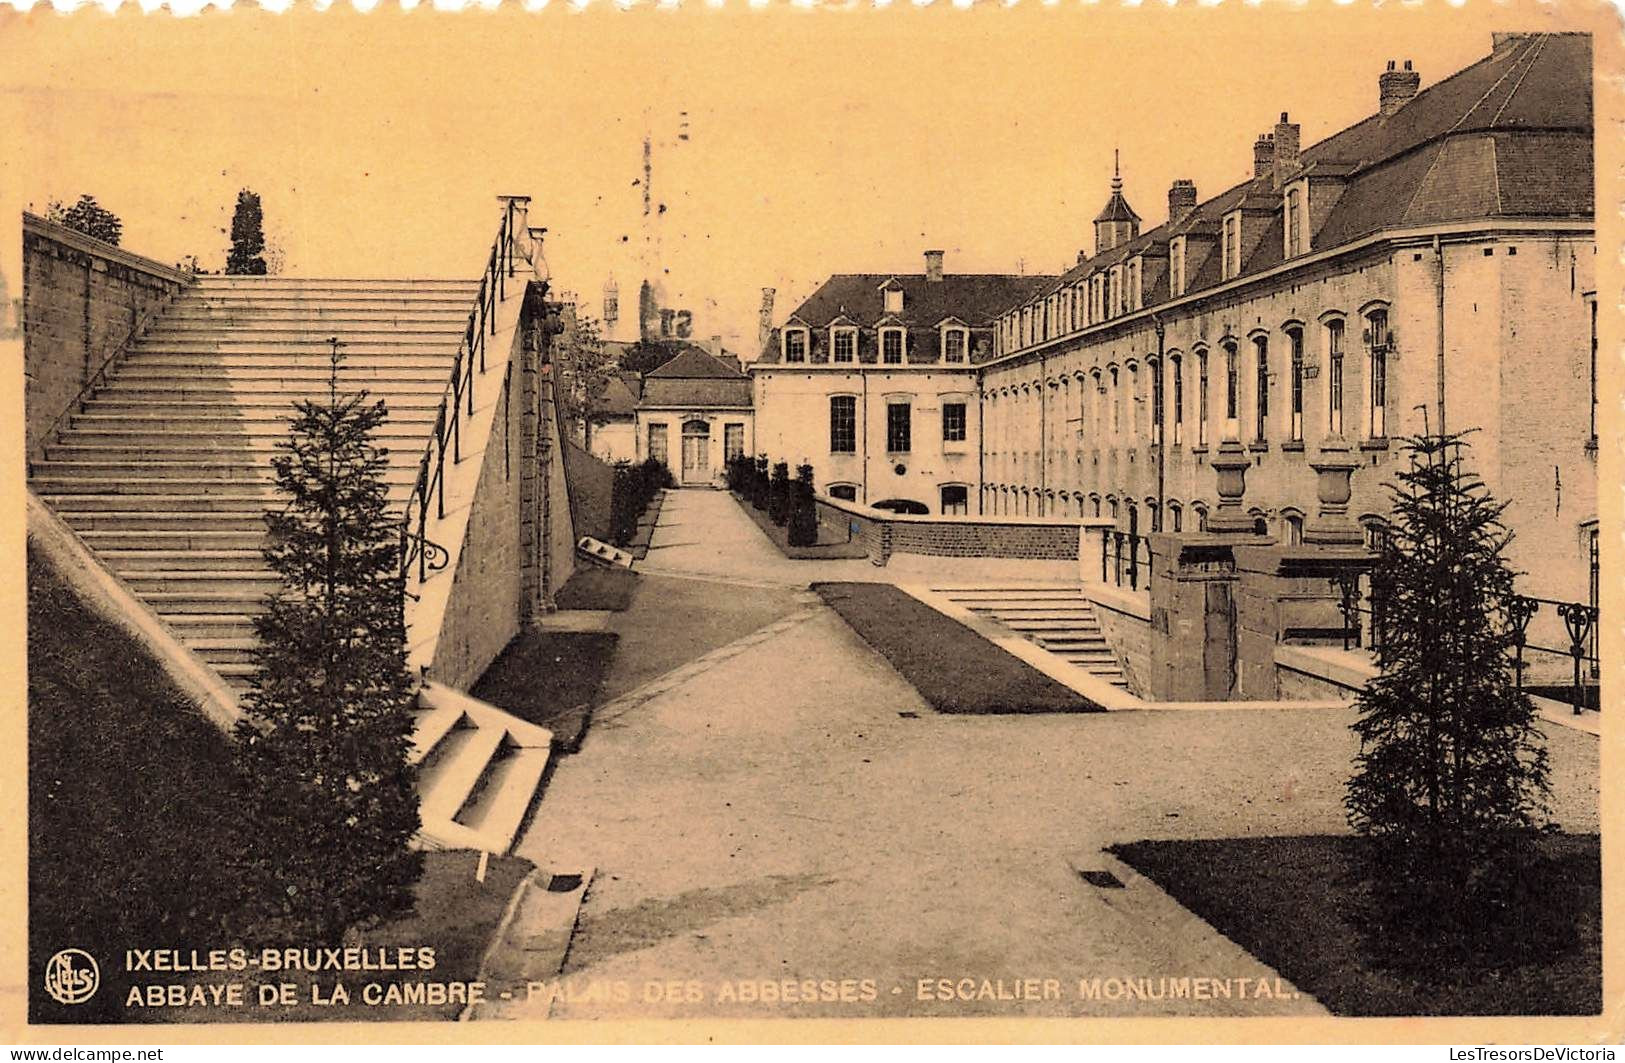 BELGIQUE - Bruxelle - Ixelles - Abbaye De La Cambre - Palais Des Abbesses - Escalier Monumental - Carte Postale Ancienne - Ixelles - Elsene